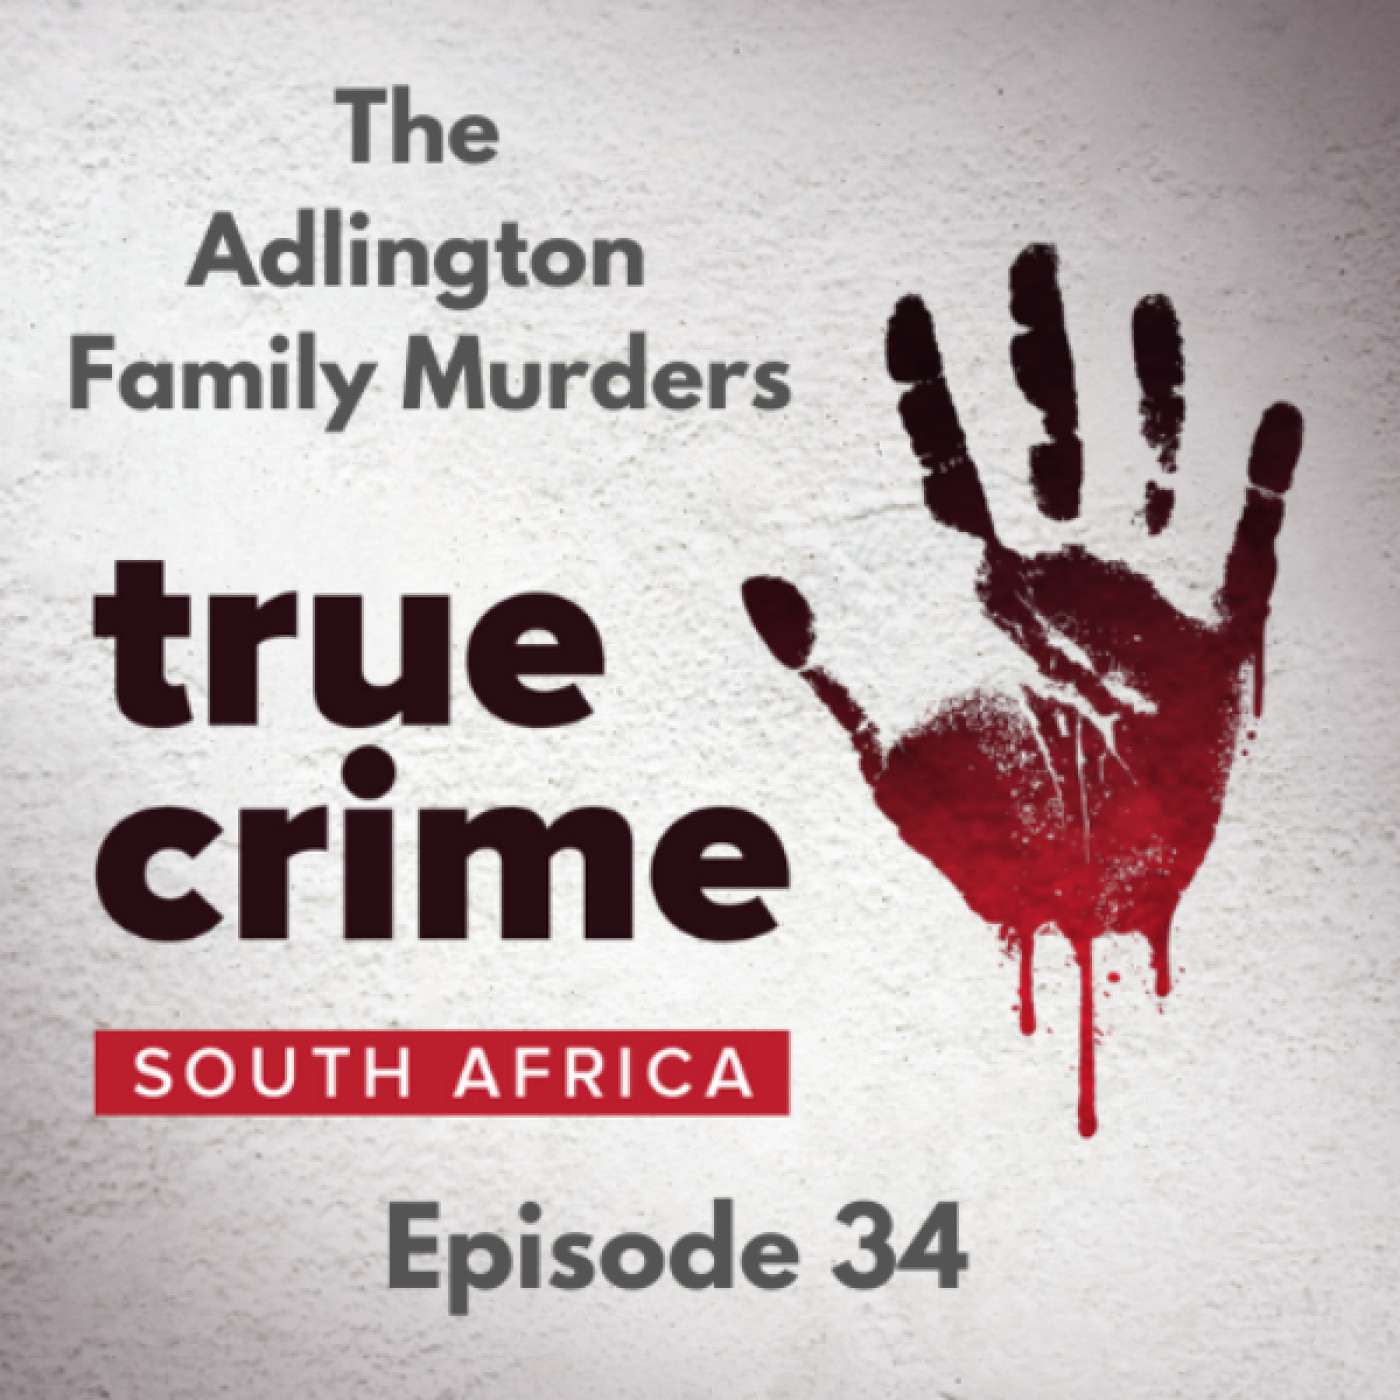 Episode 34 - The Adlington Family Murders